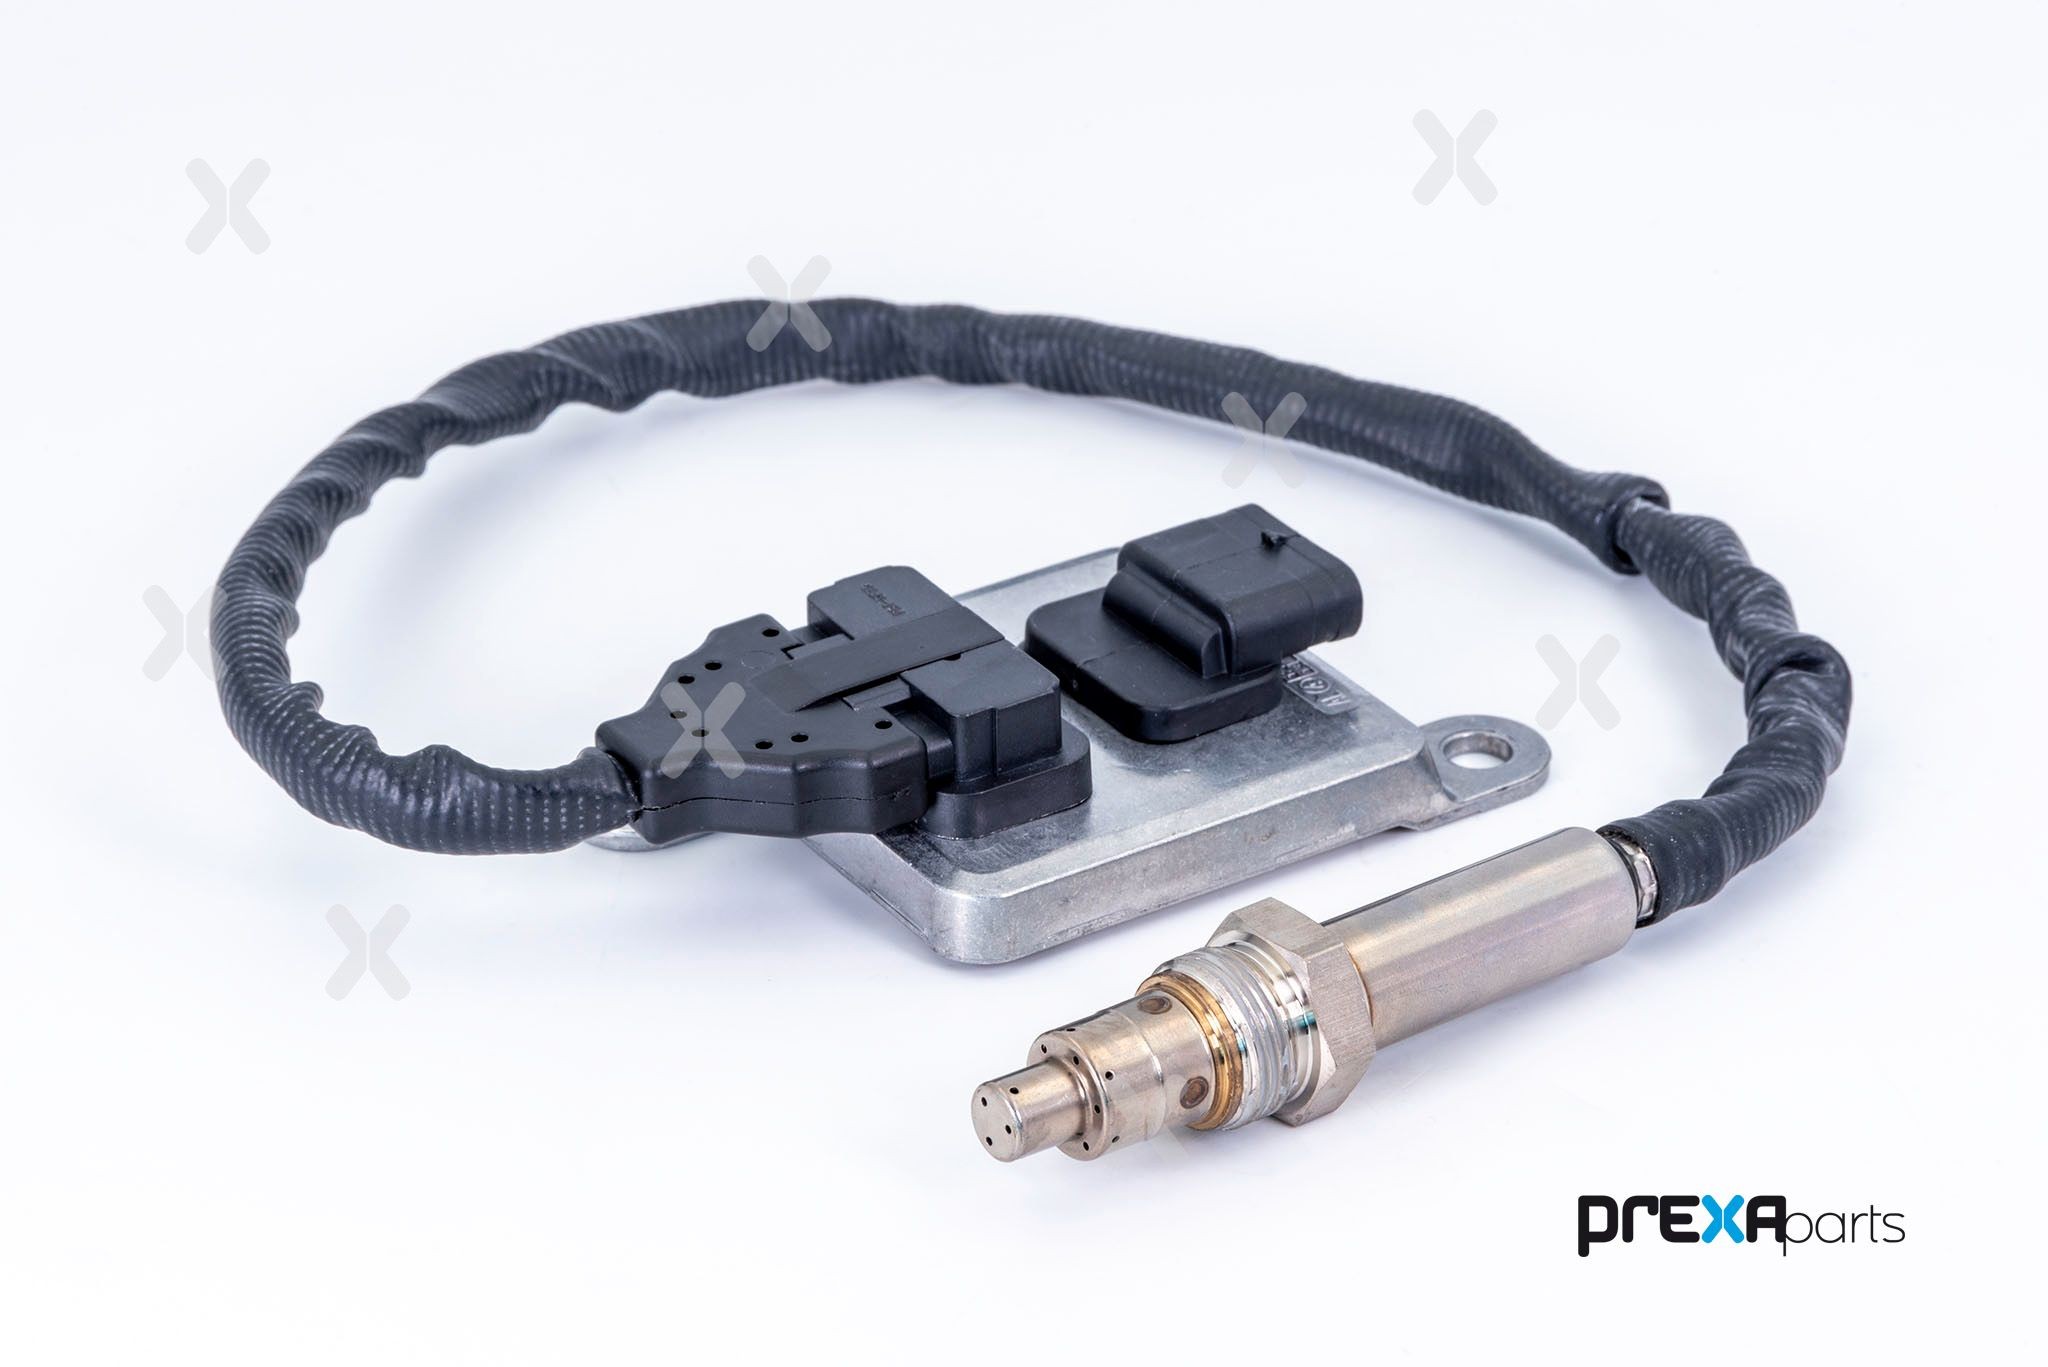 P304083 PREXAparts Oxygen sensor buy cheap